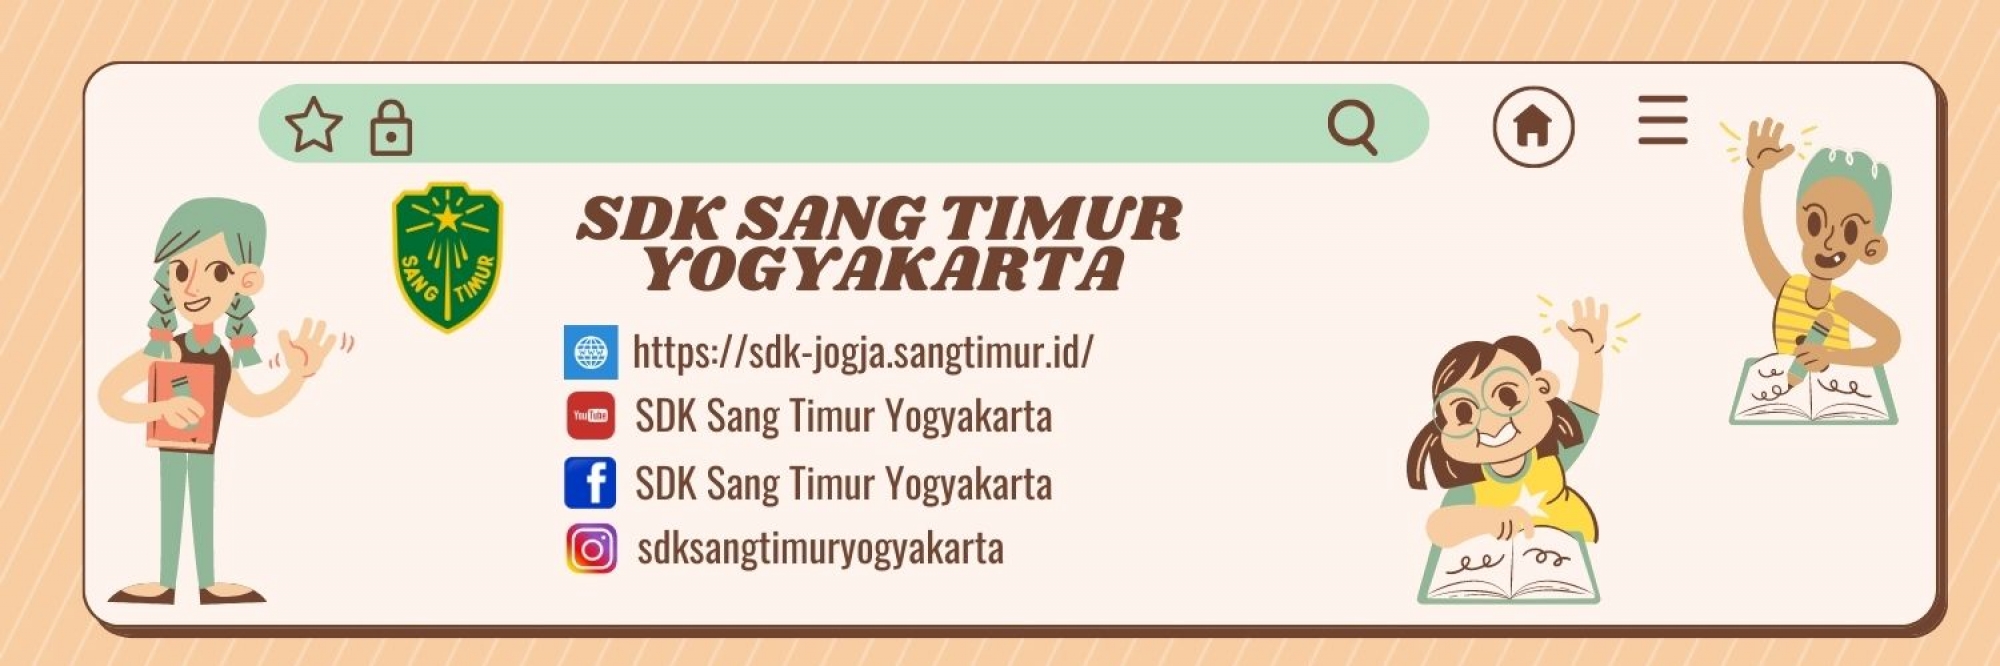 SDK Sang Timur Yogyakarta